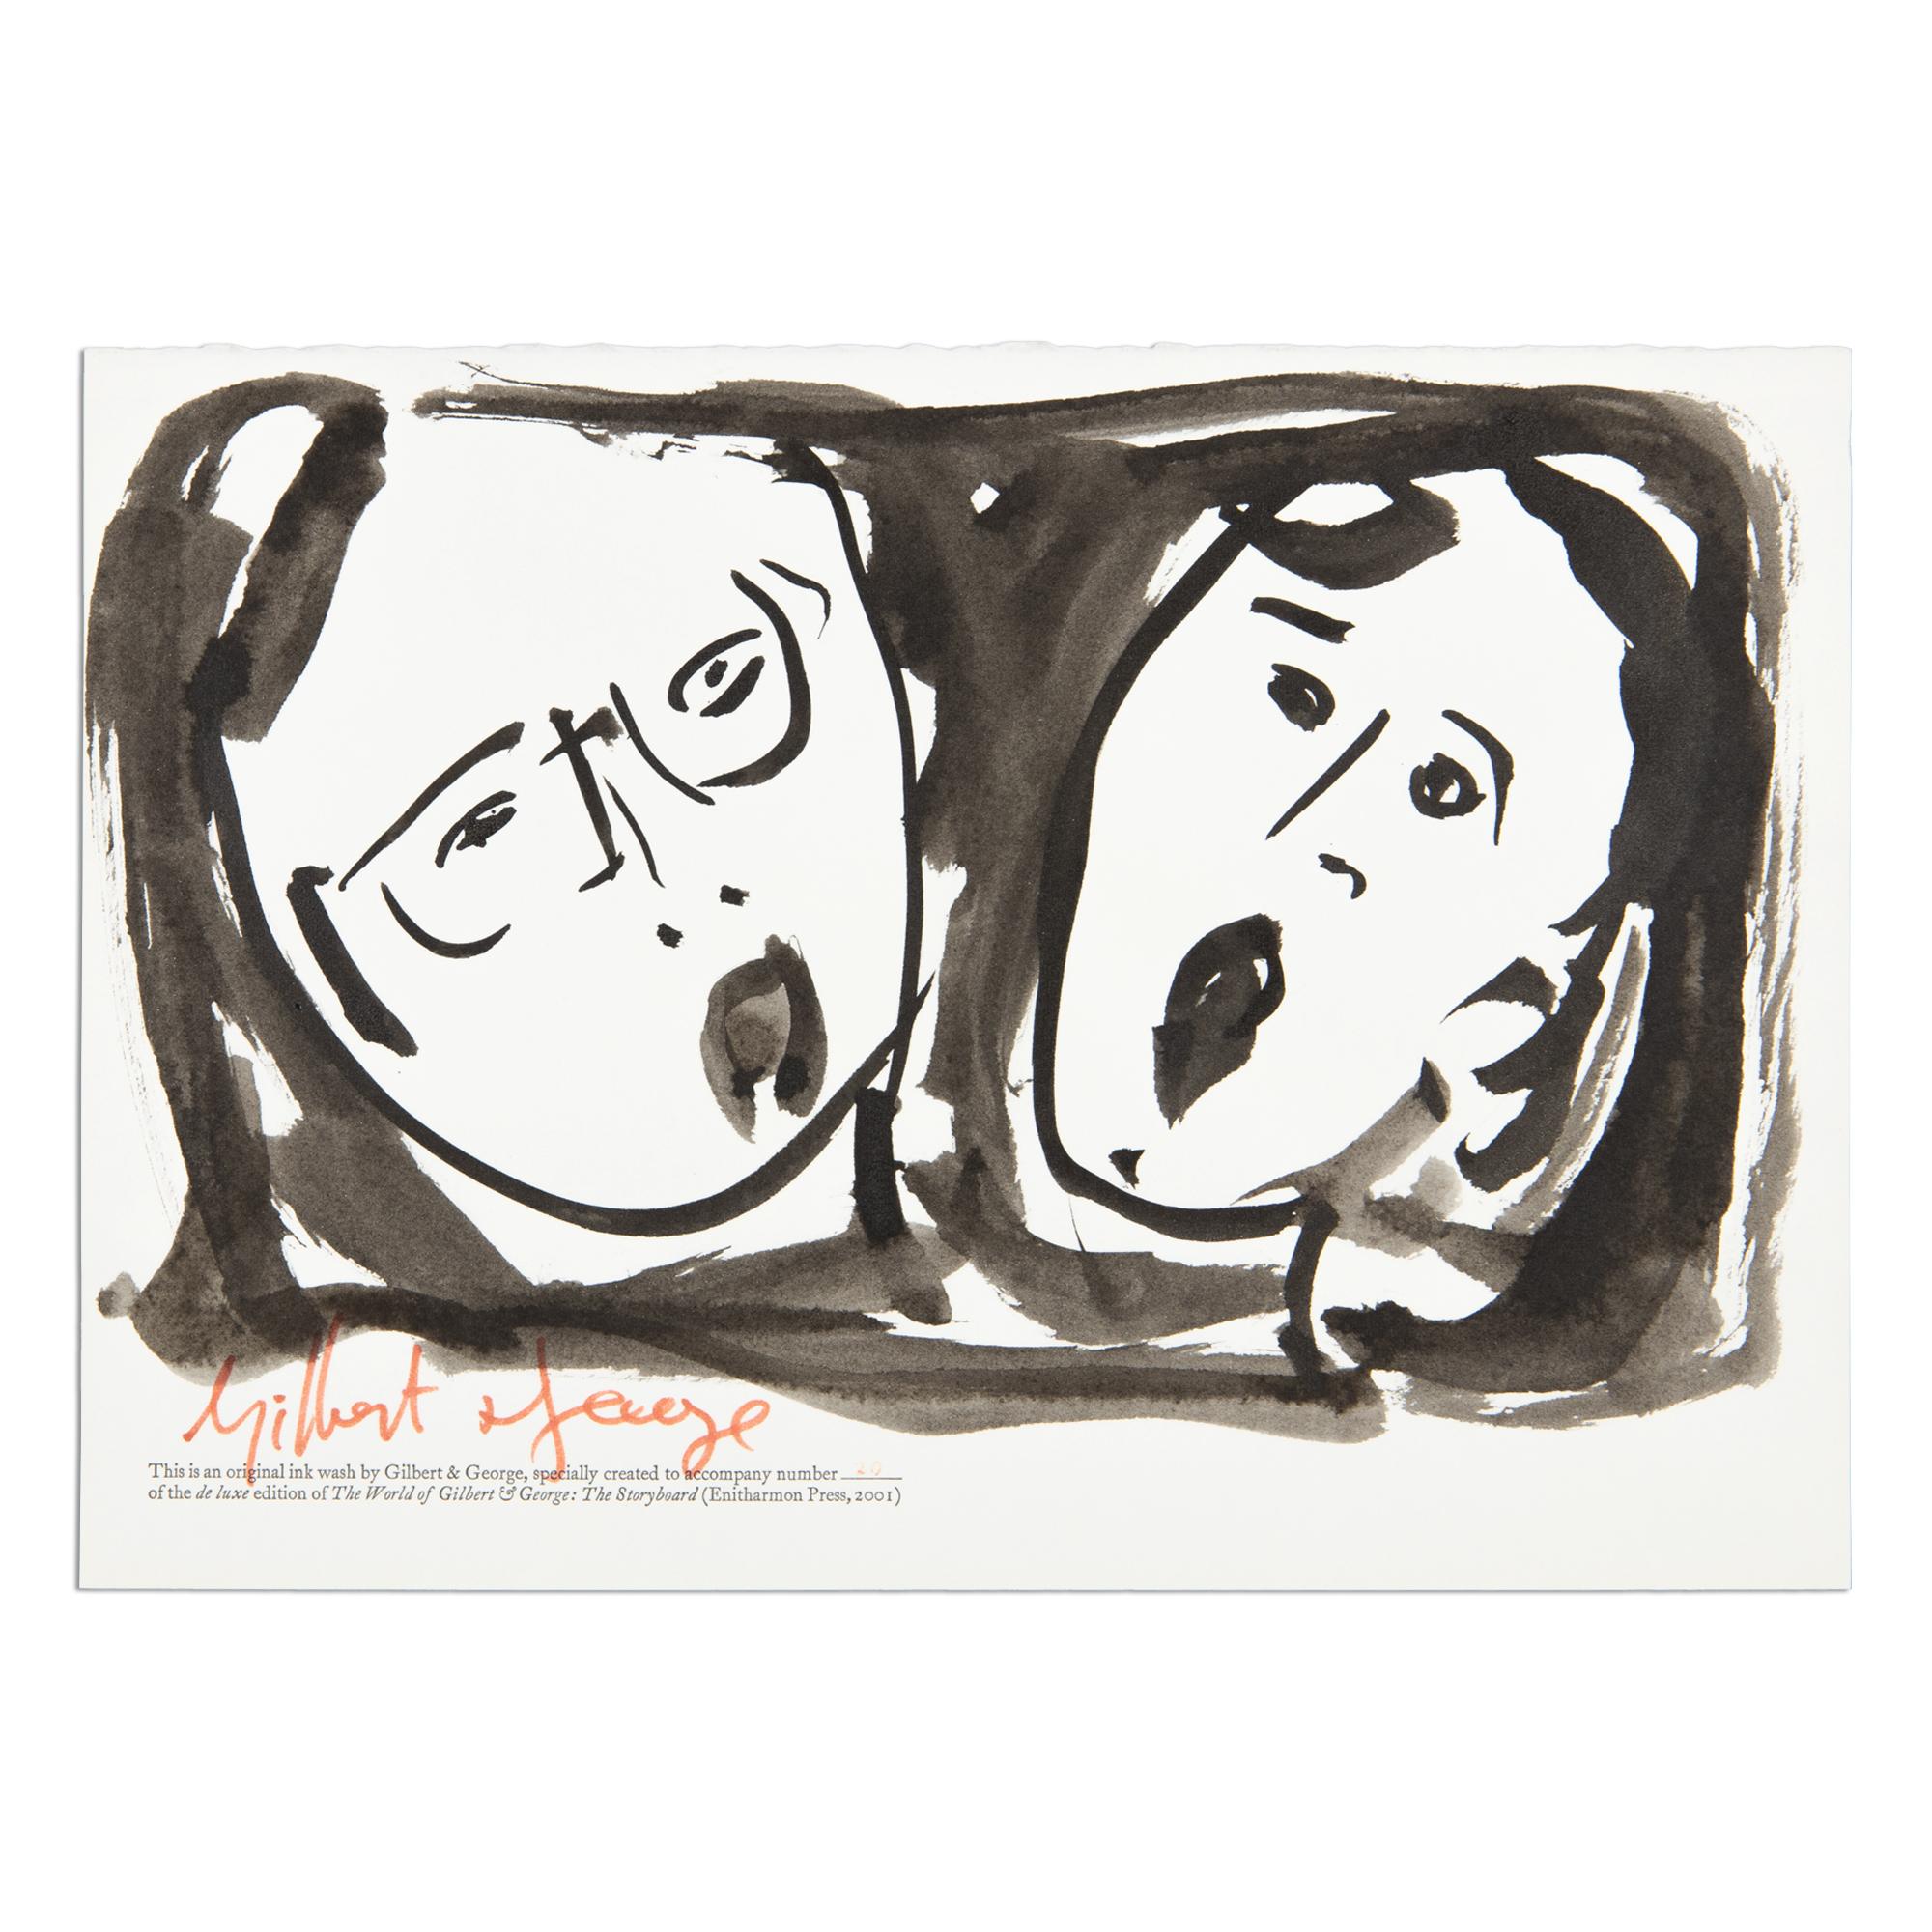 Gilbert & George (Britannique, né en 1942 et 1943)
Le monde de Gilbert & George : le storyboard, 2001
Moyen d'expression : Dessin au lavis d'encre sur papier (et livre d'artiste)
Dimensions : 20,3 x 29,2 cm : 20,3 x 29,2 cm (8 x 11½ in)
Édition de